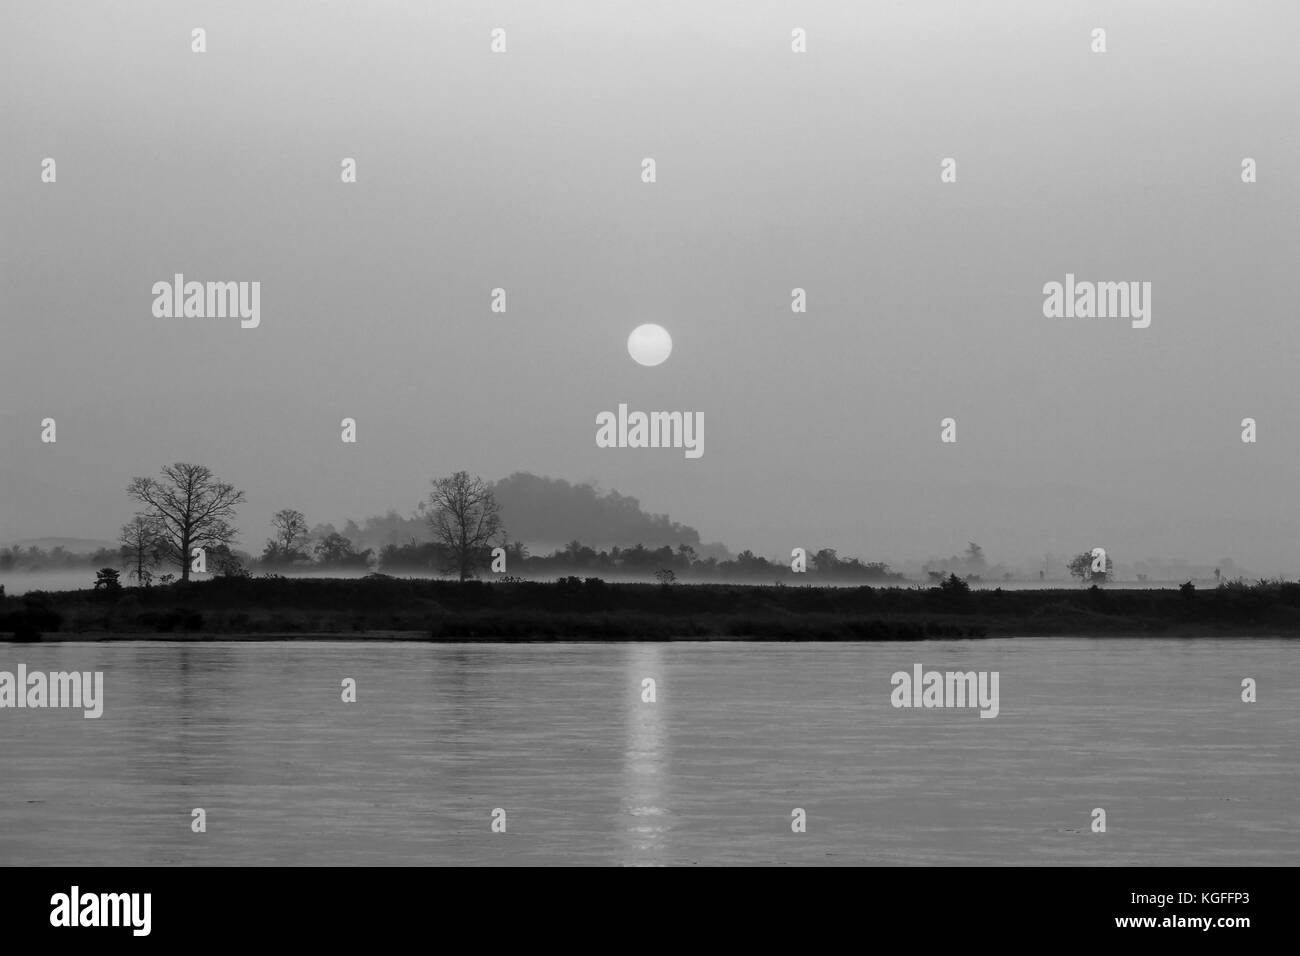 Immagine in bianco e nero, bellissima alba sul fiume Foto Stock